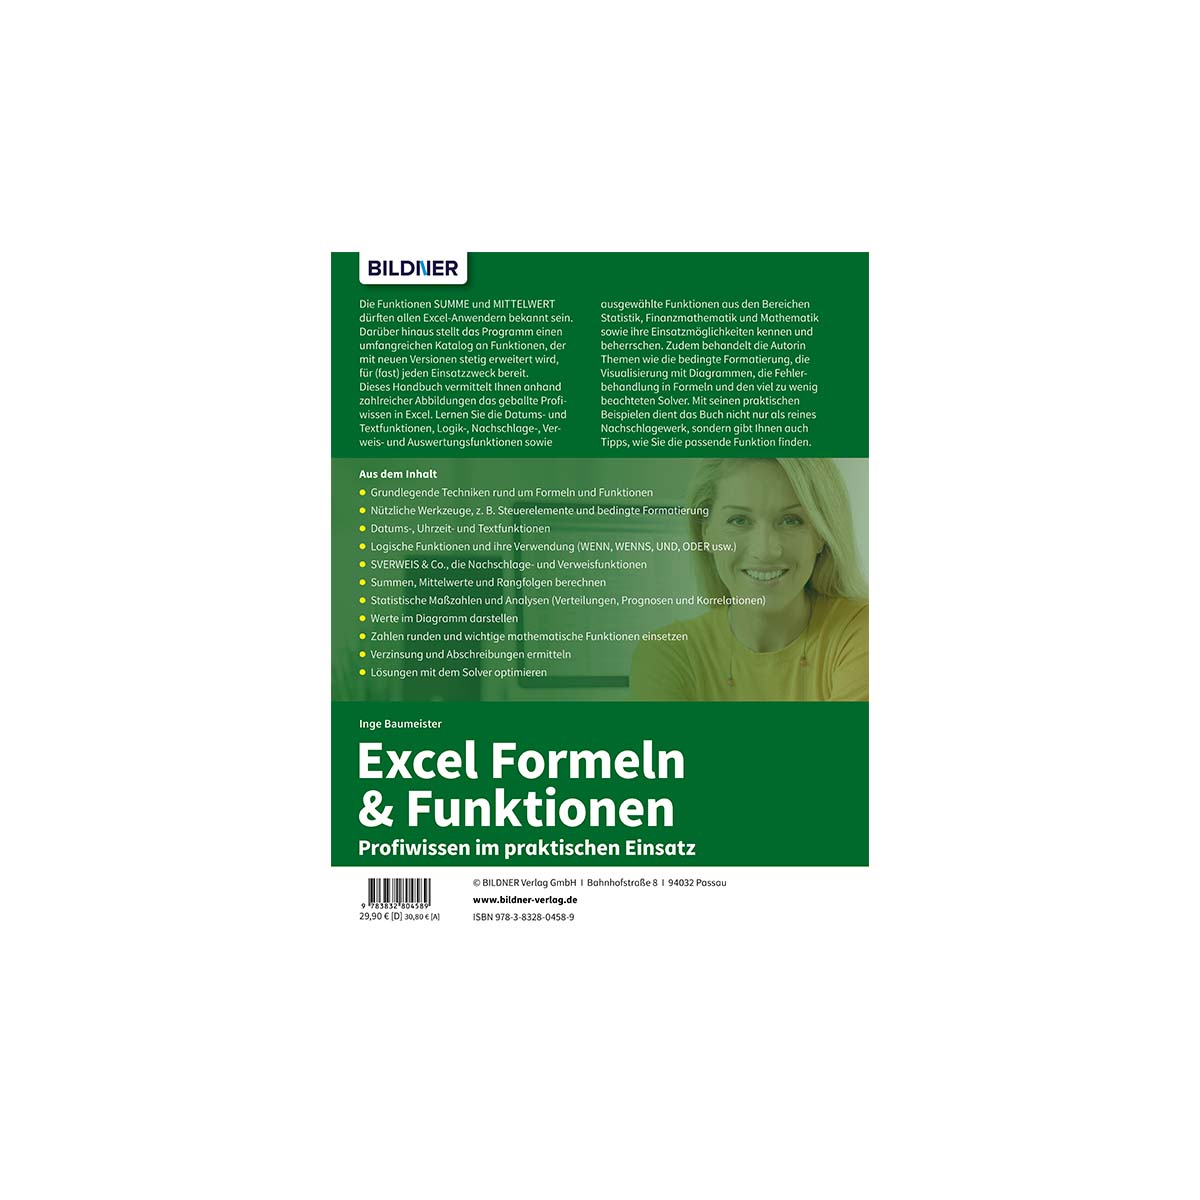 Excel Formeln & Funktionen: Einsatz praktischen Profiwissen im